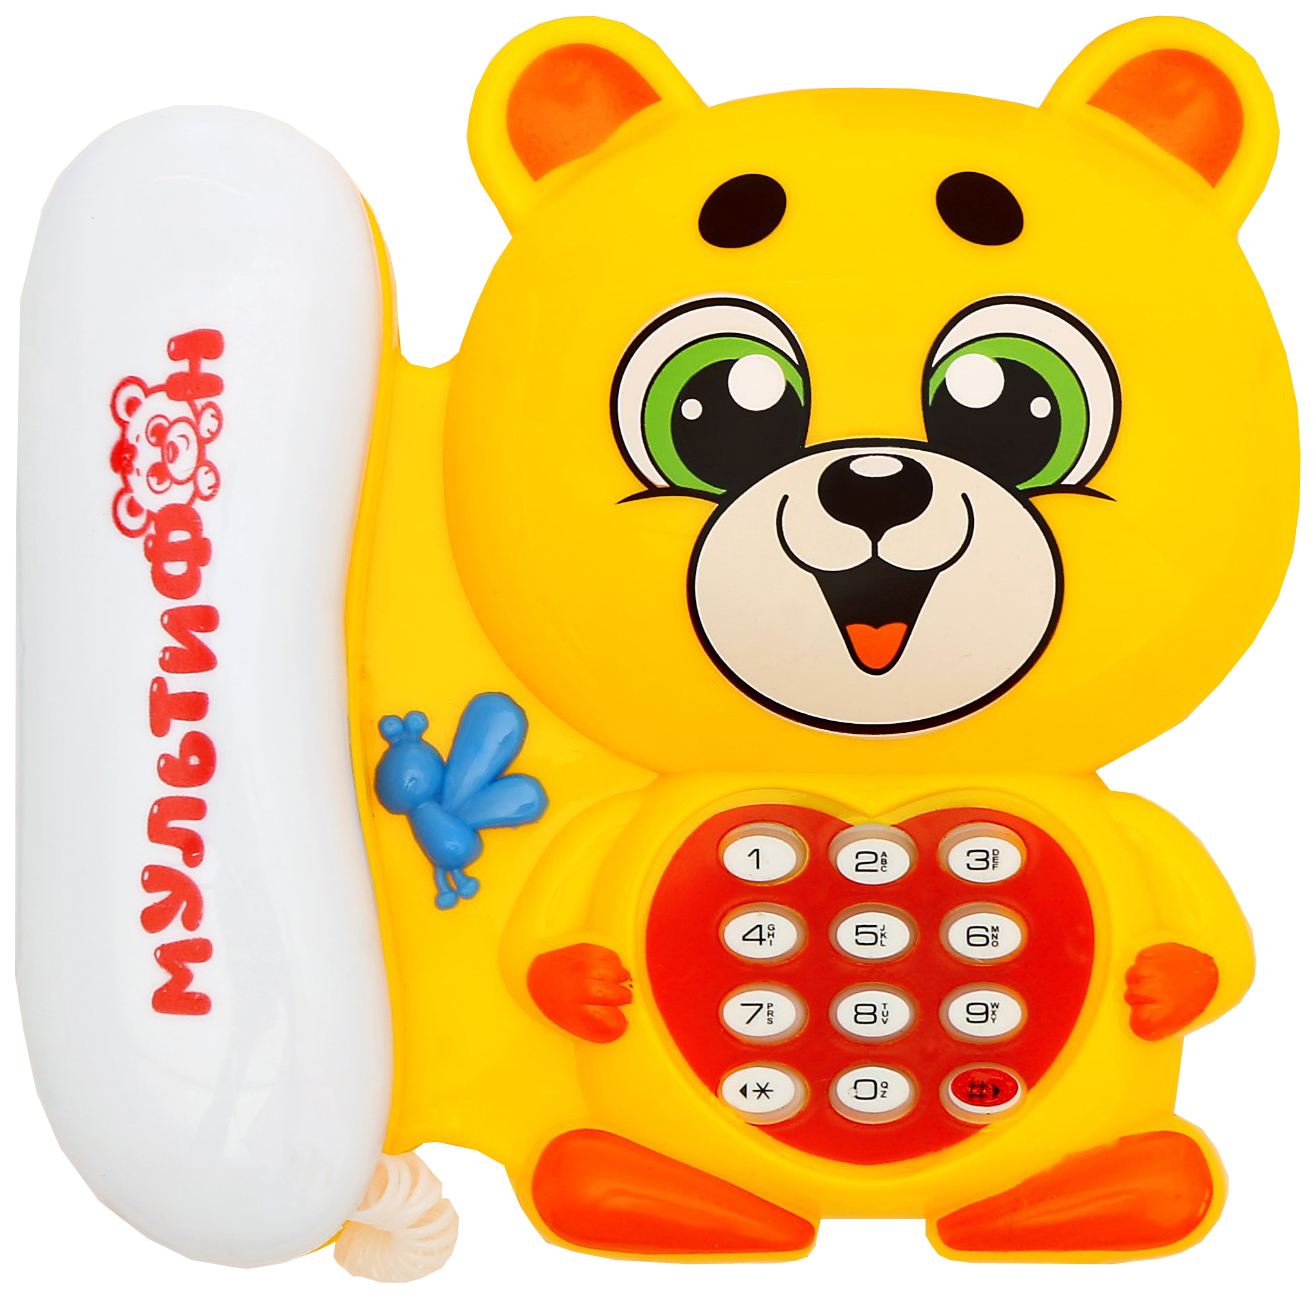 Телефон стационарный Мишка, русская озвучка цвет оранжевый Забияка